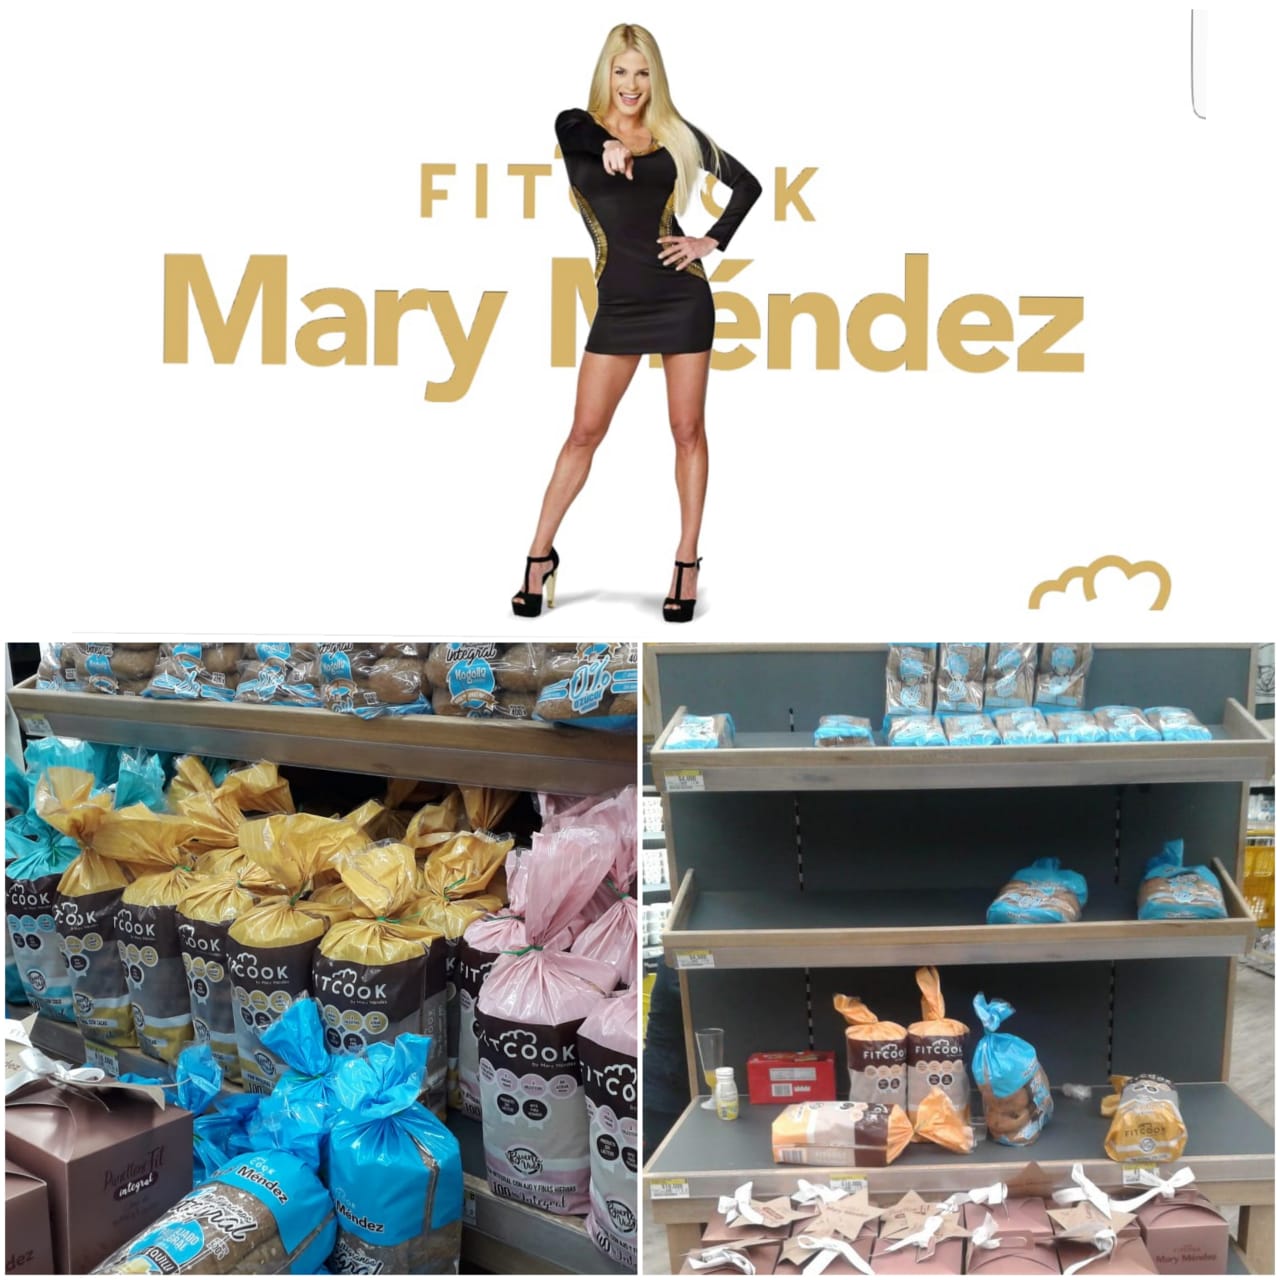 La empresaria Mary Méndez con su producto Fitcook ya está en los almacenes de grandes superficies.